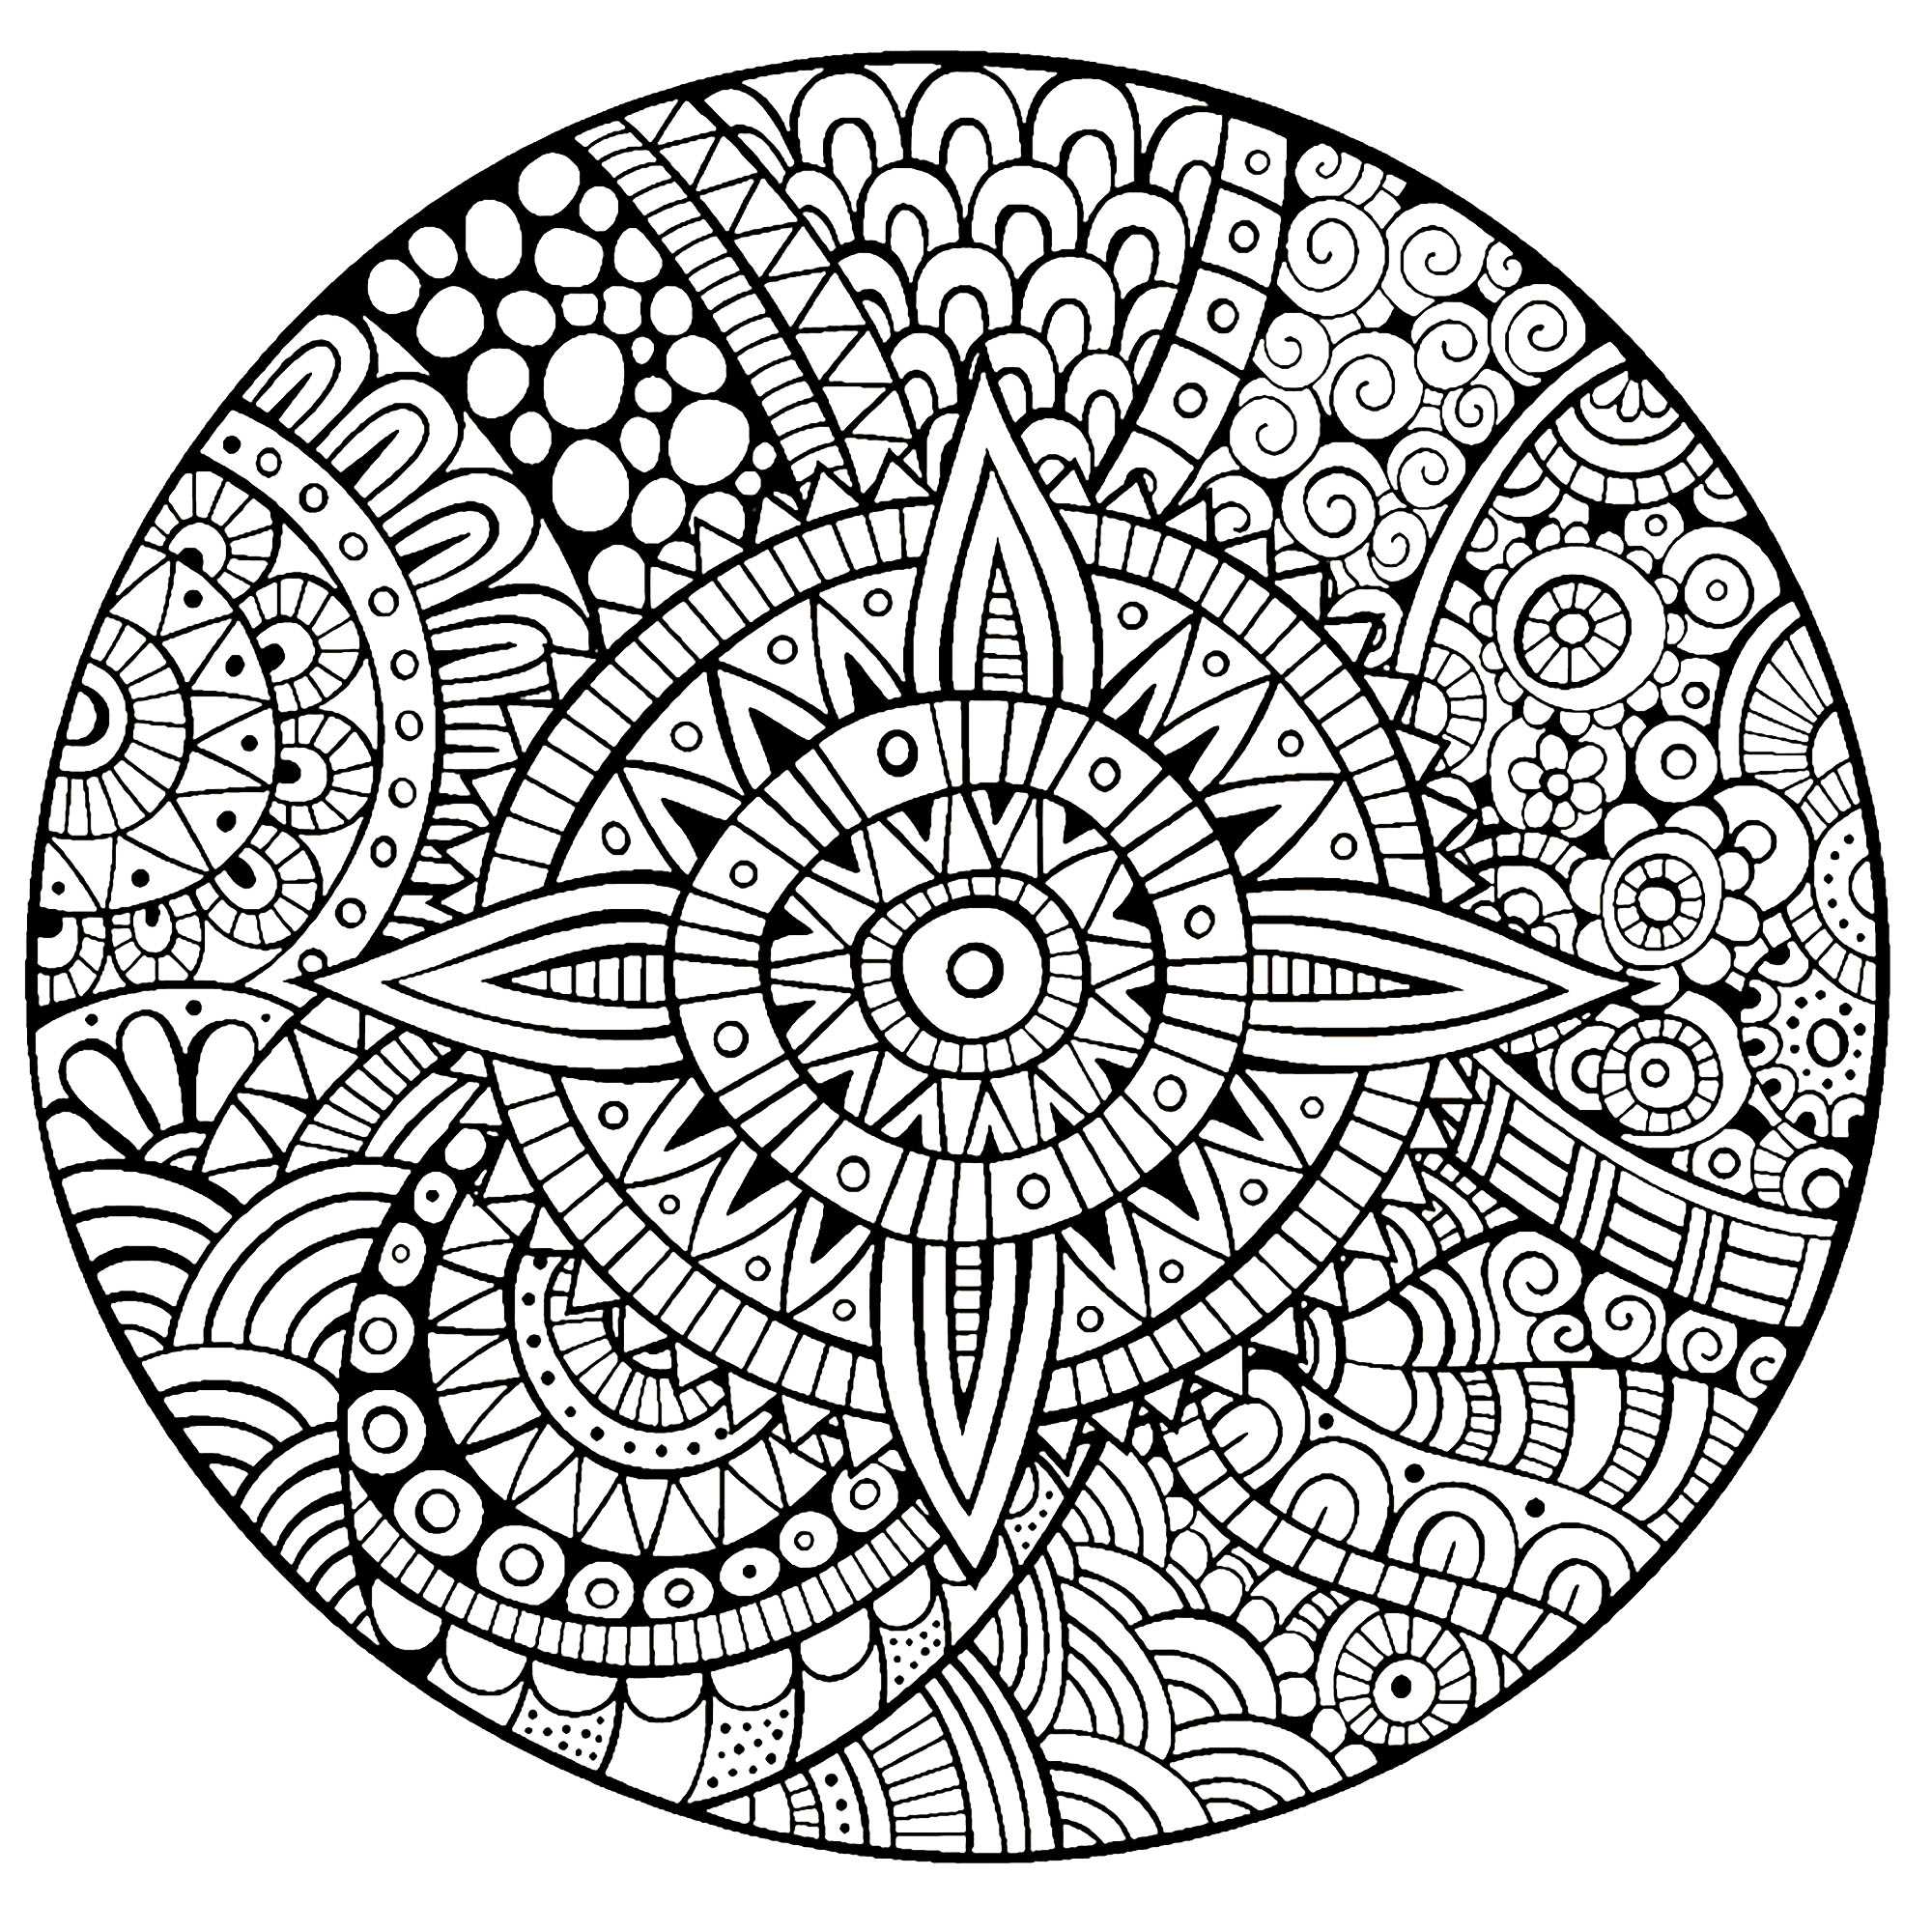 Uma Mandala garantidamente 100% Zen, para um momento de puro relaxamento. Sentirá rapidamente os benefícios de colorir graças a este desenho totalmente único e calmante.